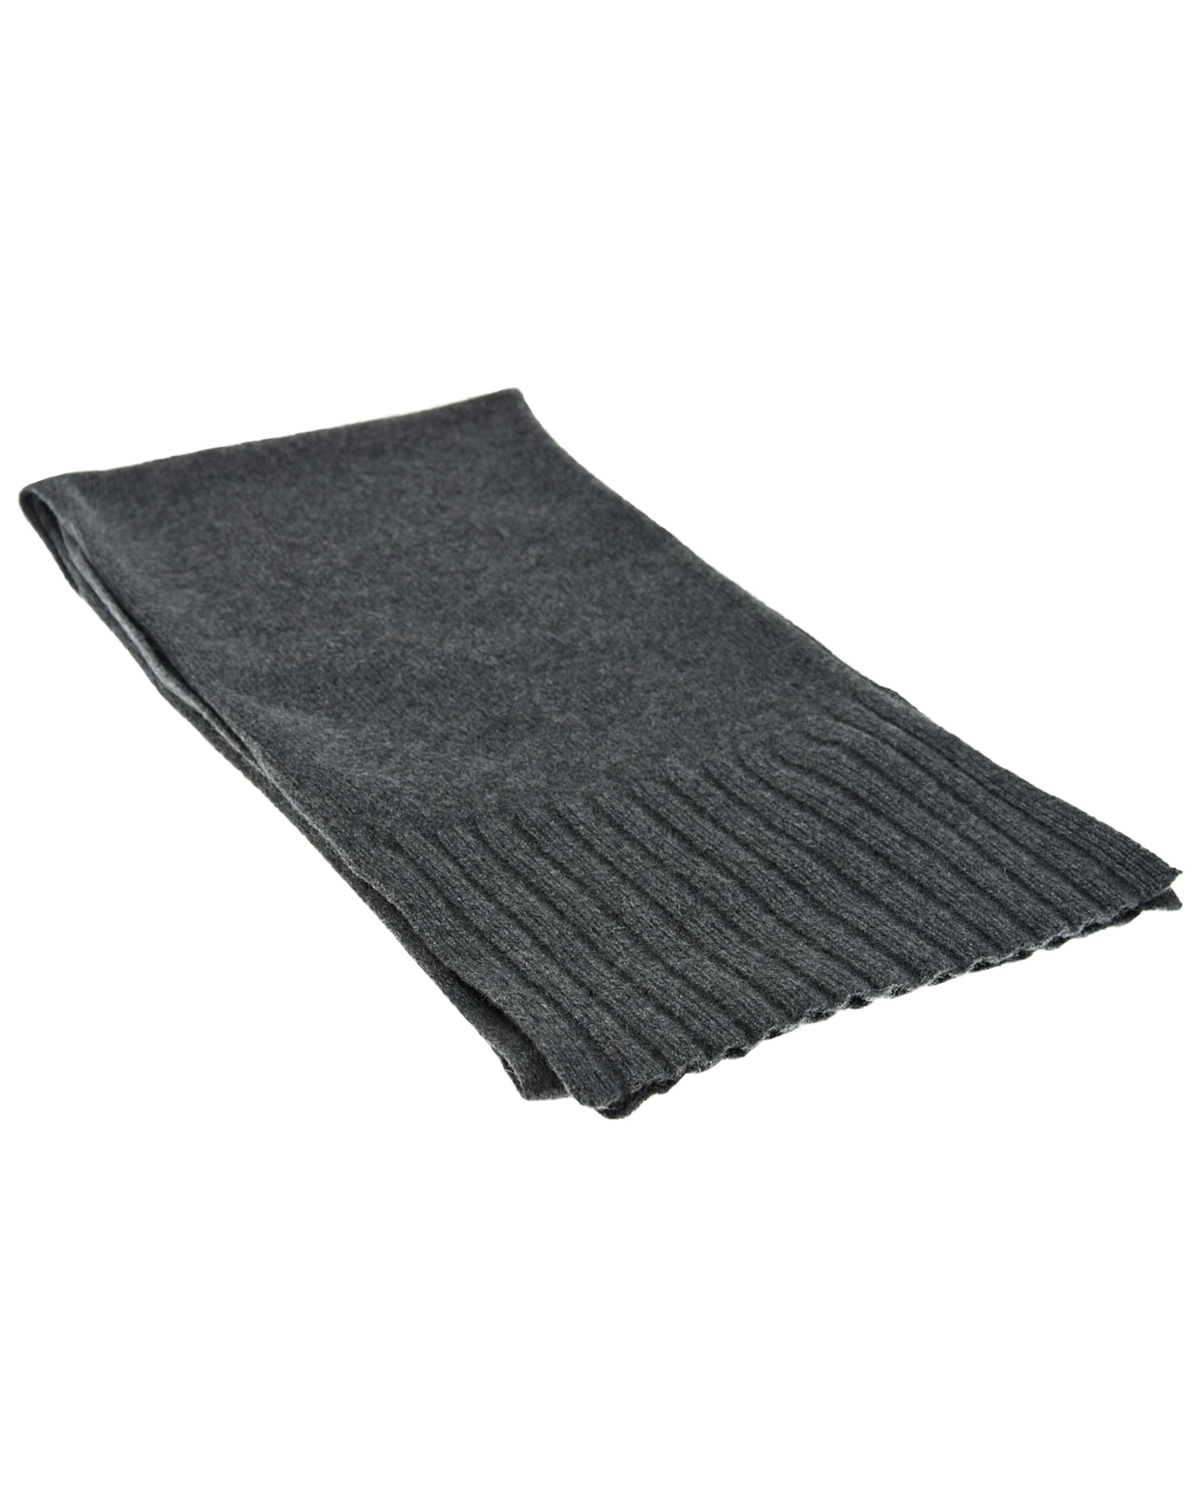 Темно-серый шарф из кашемира и шерсти CAPO детское, размер unica